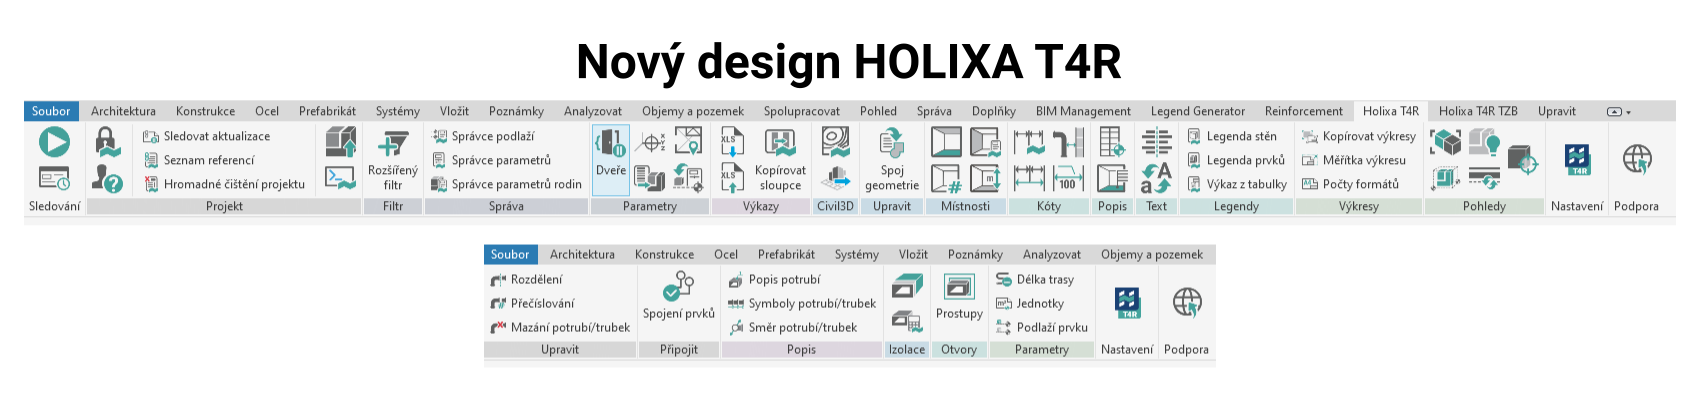 Holixa T4R - nová verze přináší nový design GUI